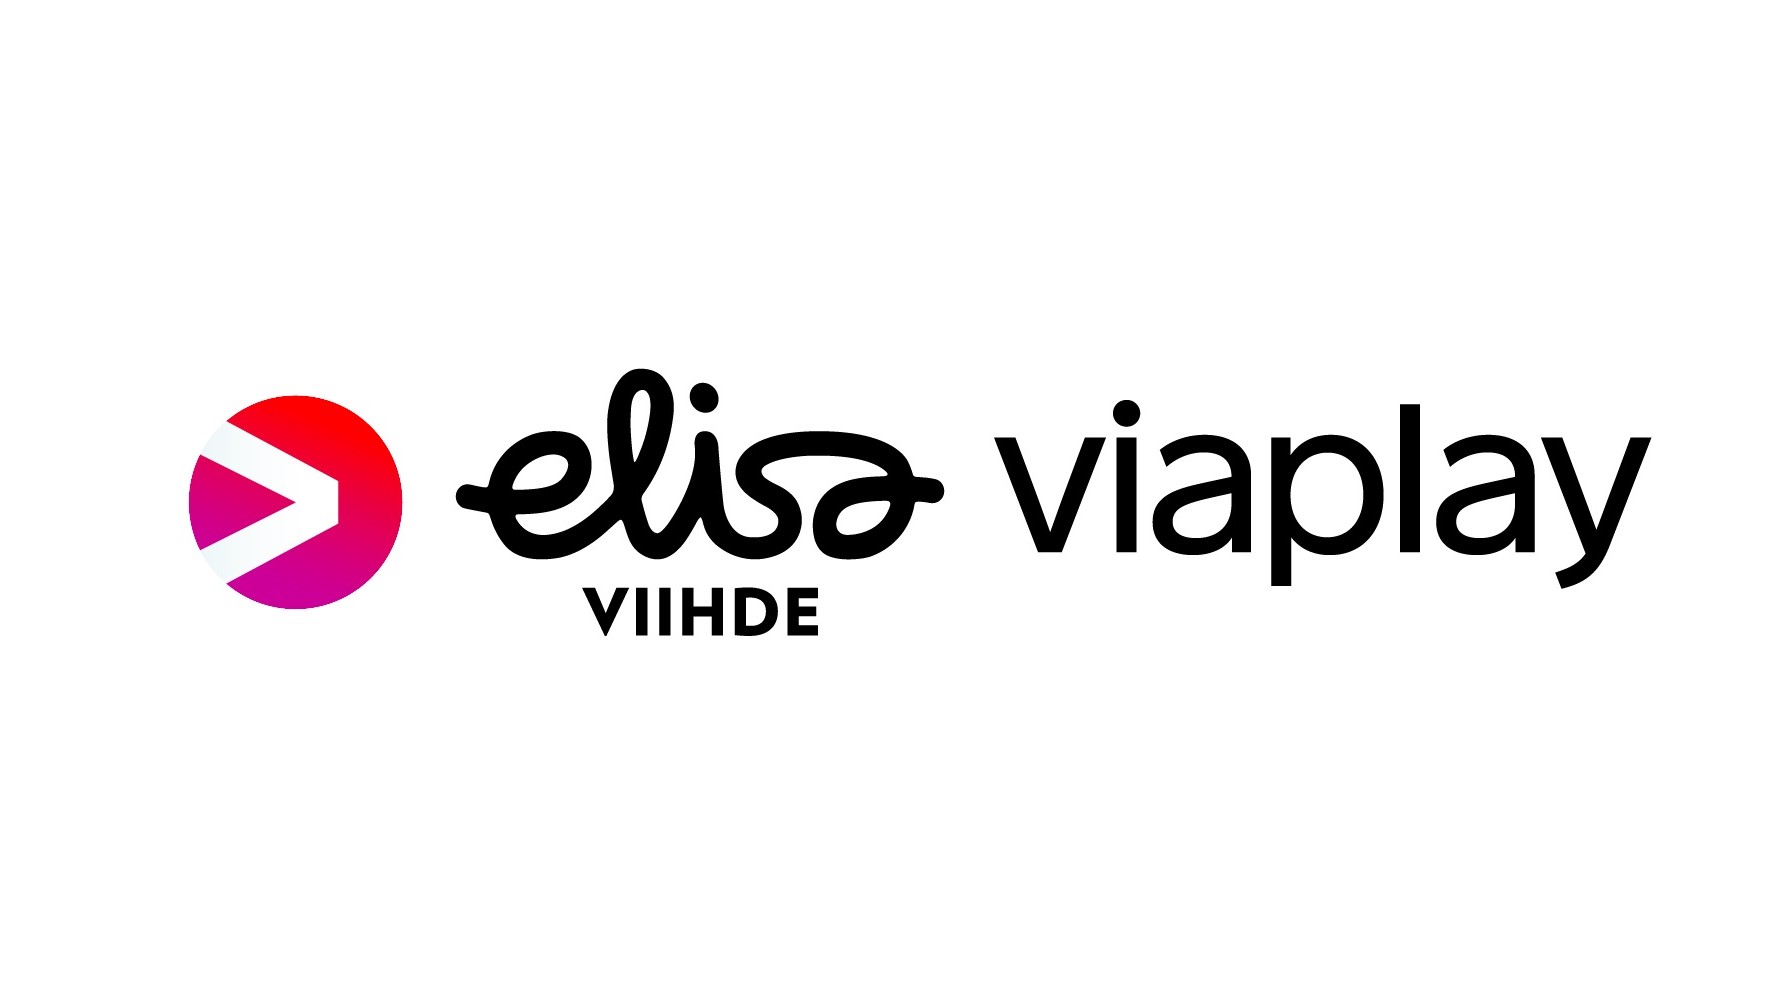 Elisa Viihde Viaplay Total -paketti maksaa nyt 45 euroa kuukaudessa -  AfterDawn